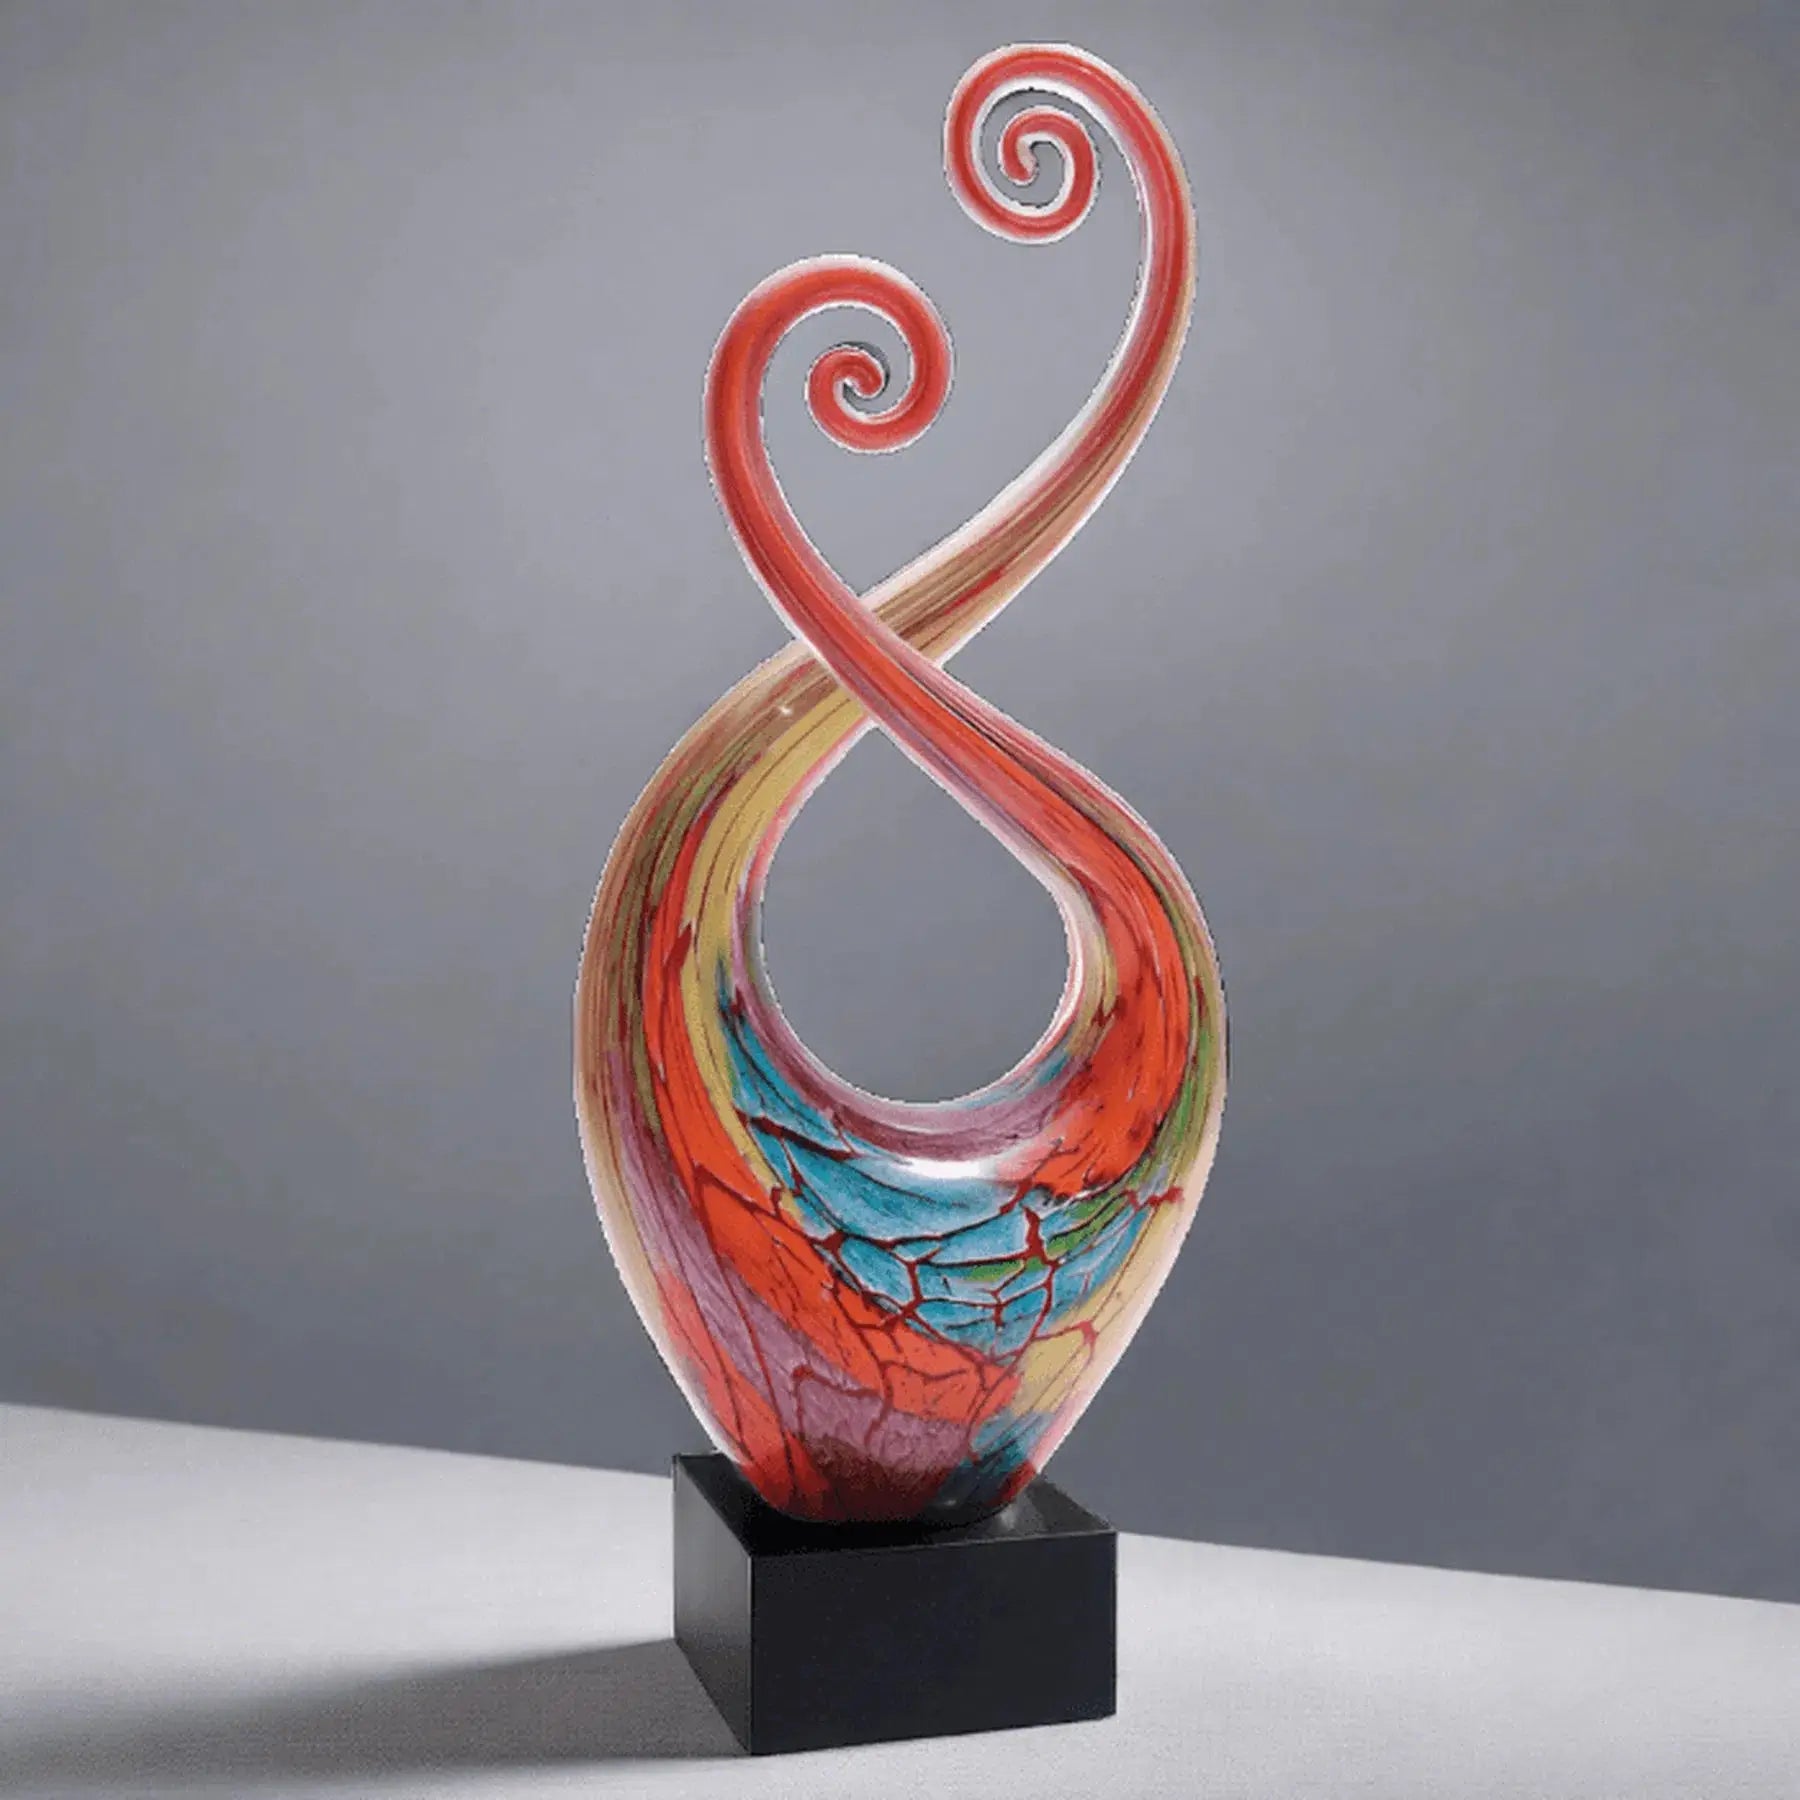 14" Multi-Color Twist Art Glass Award Sculpture